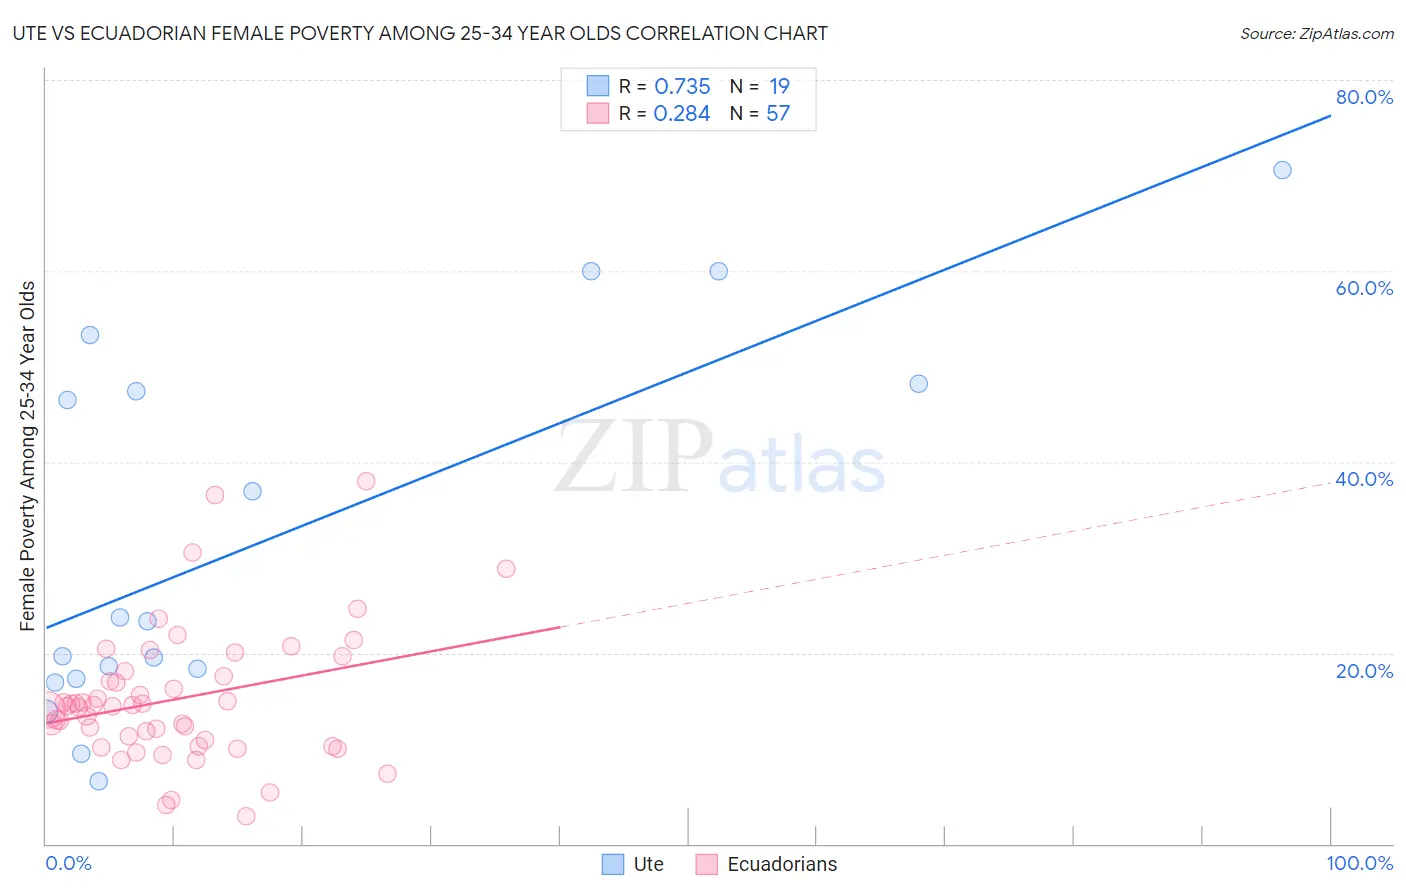 Ute vs Ecuadorian Female Poverty Among 25-34 Year Olds